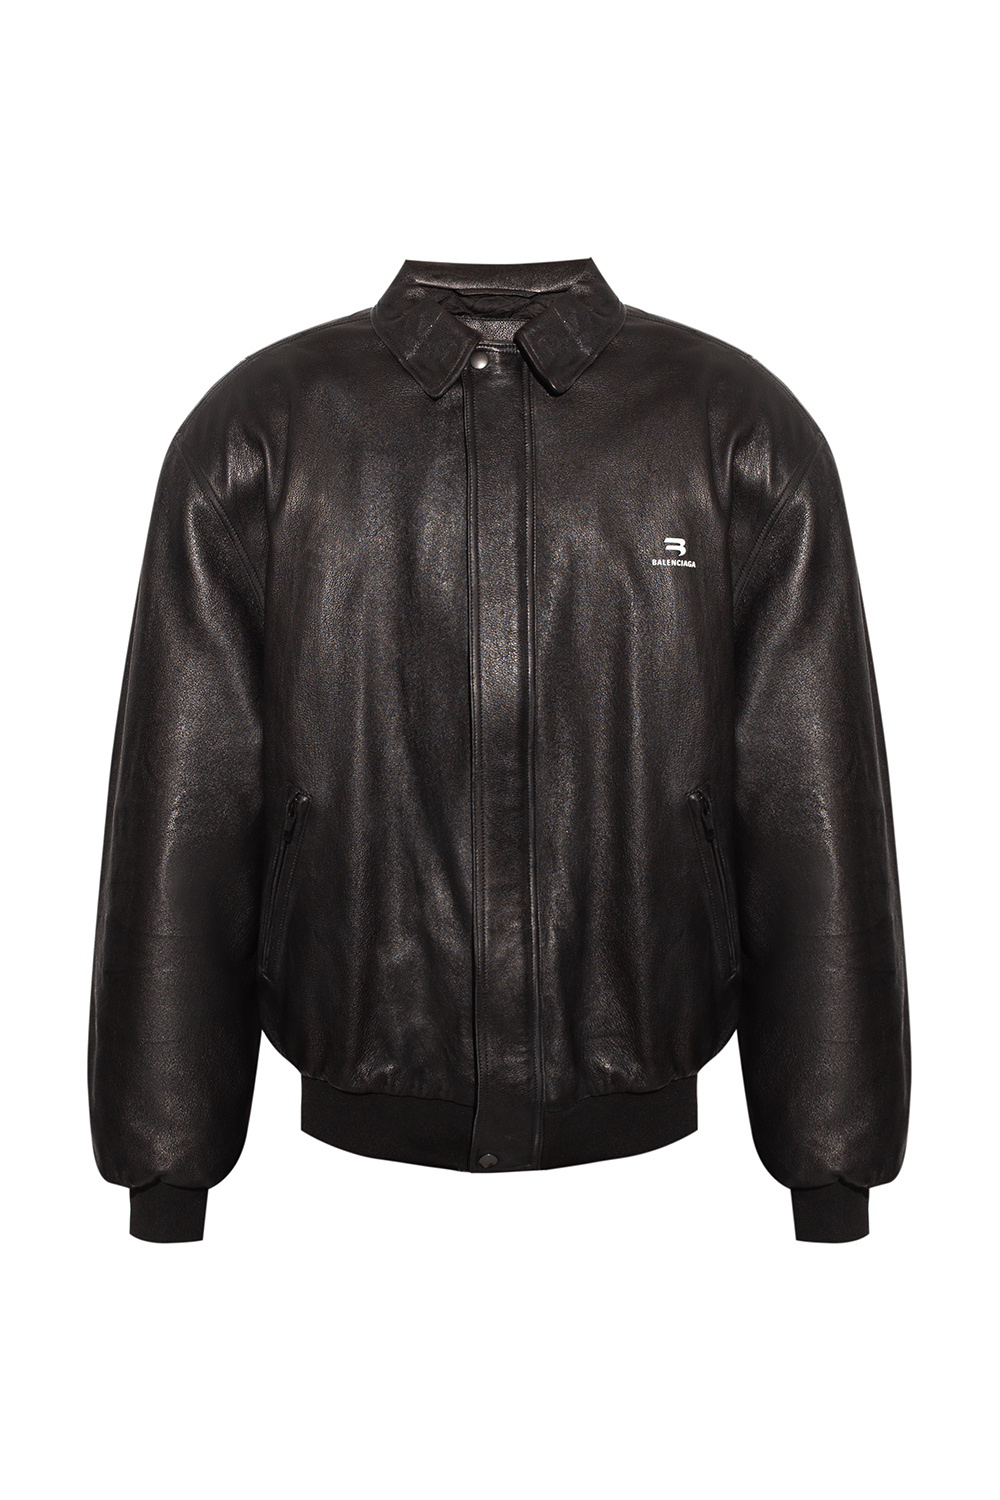 Montgomery efter skole kabine Leather jacket Balenciaga - EdifactoryShops VC